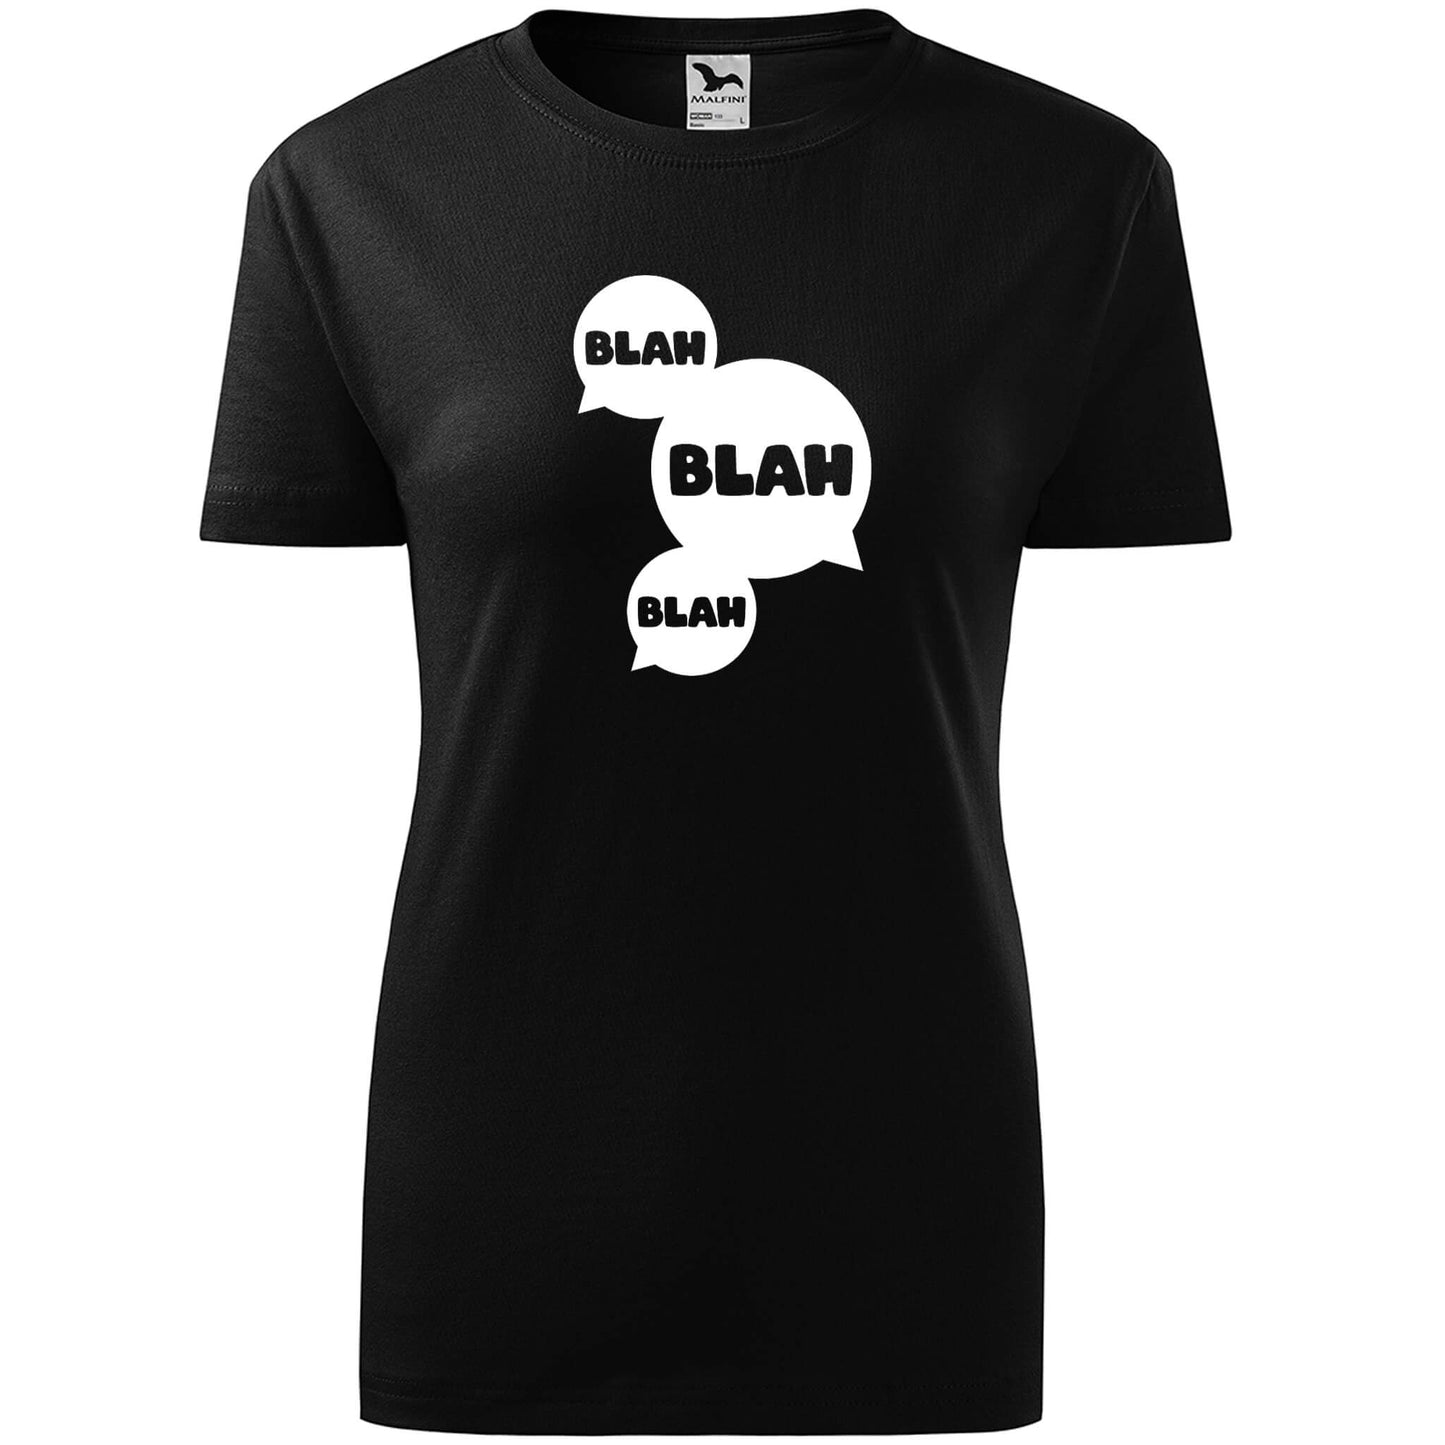 T-shirt - blah blah blah - rvdesignprint